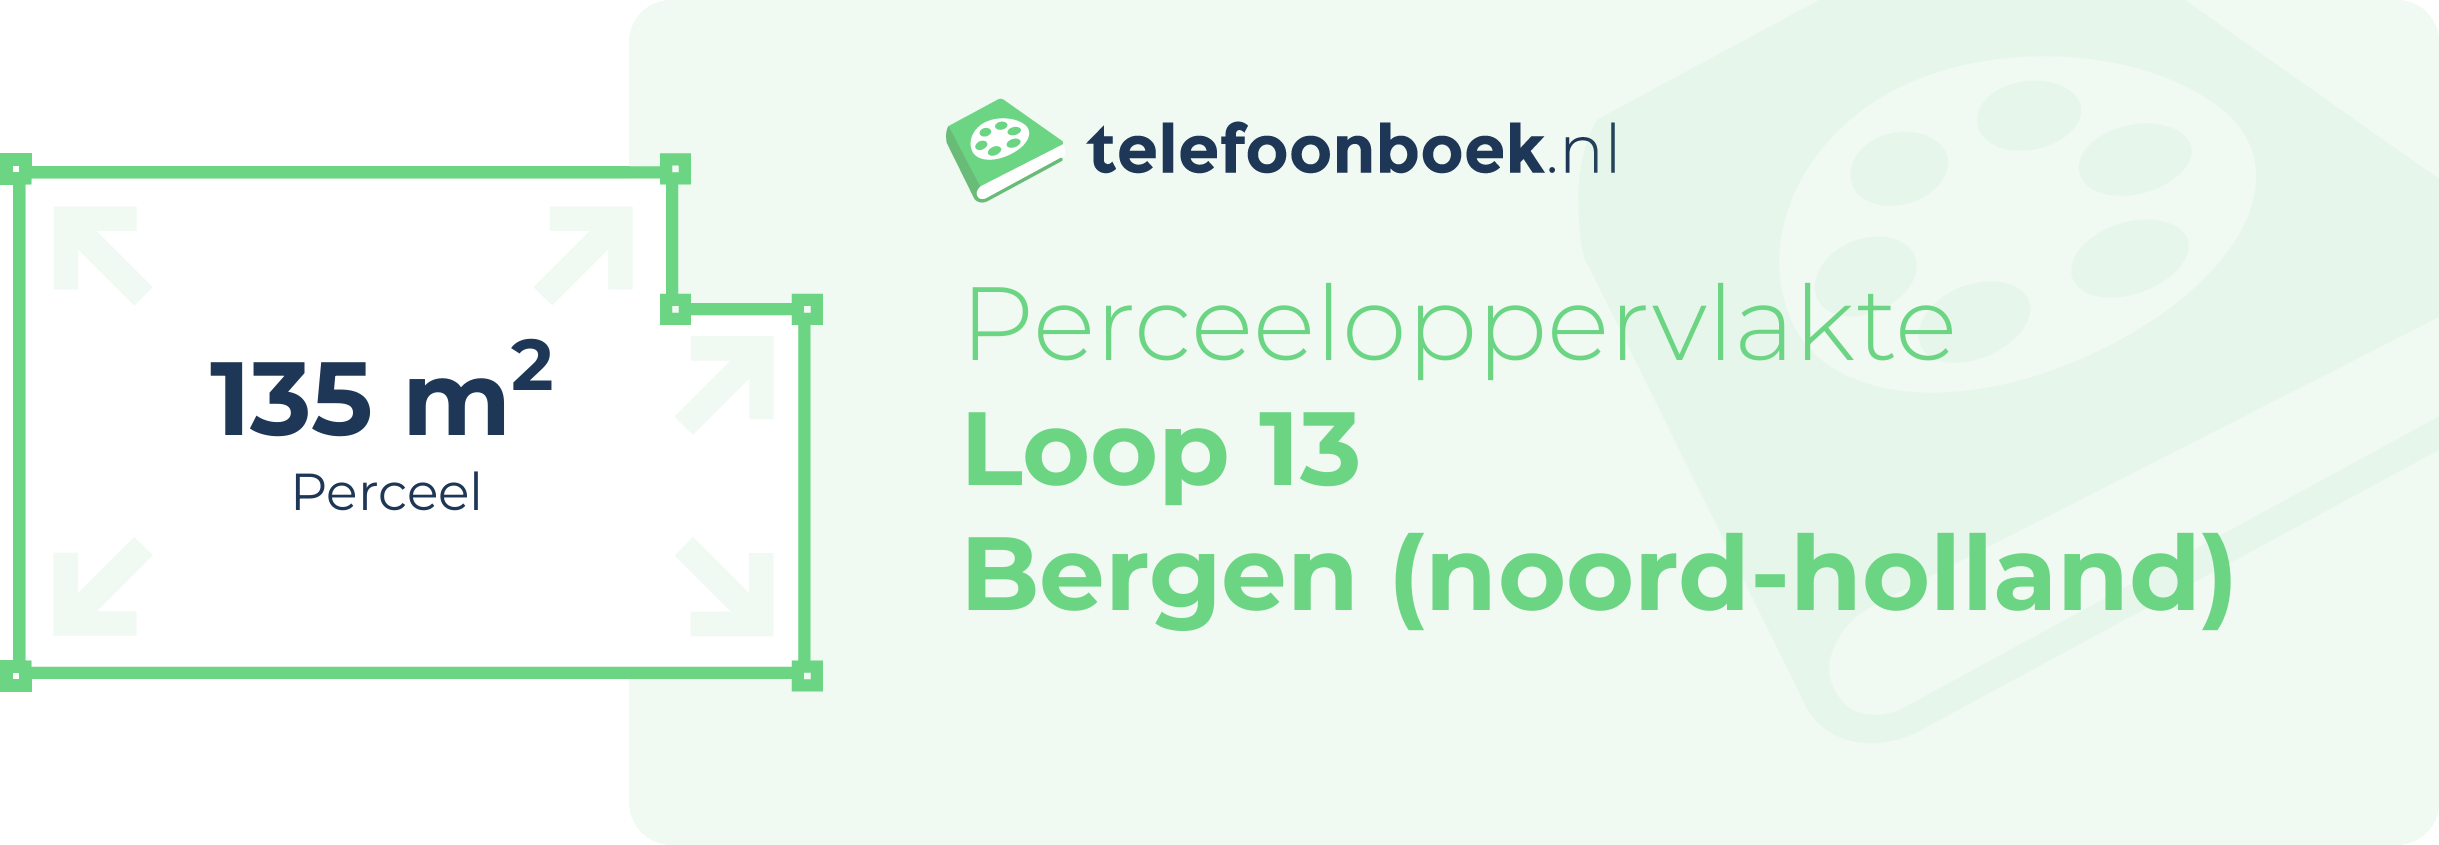 Perceeloppervlakte Loop 13 Bergen (Noord-Holland)